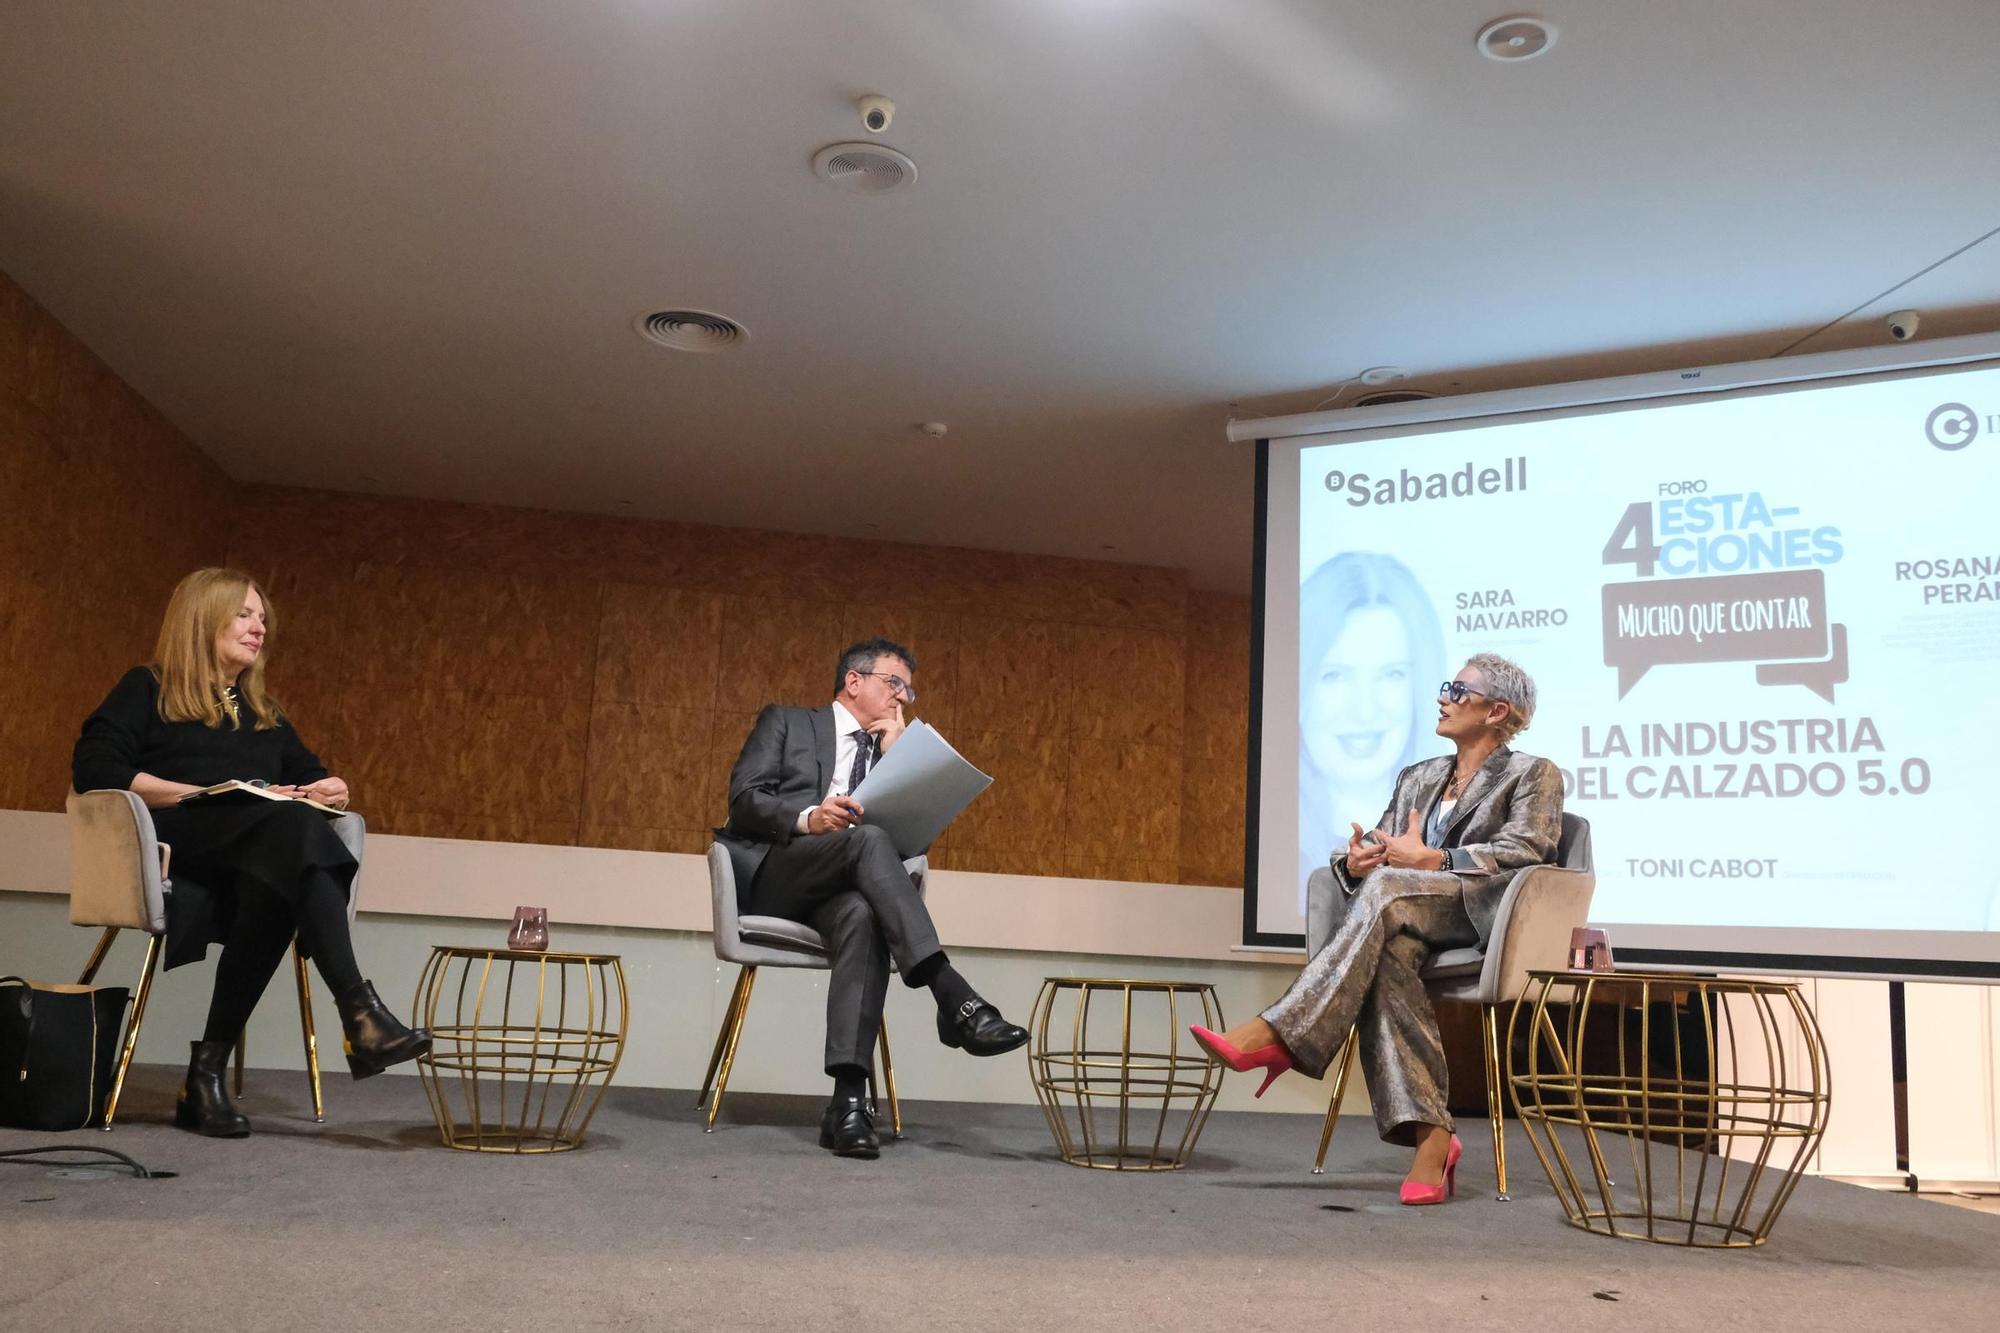 El Foro «Industria del calzado 5.0» organizado por el Club INFORMACIÓN y Sabadell en imágenes